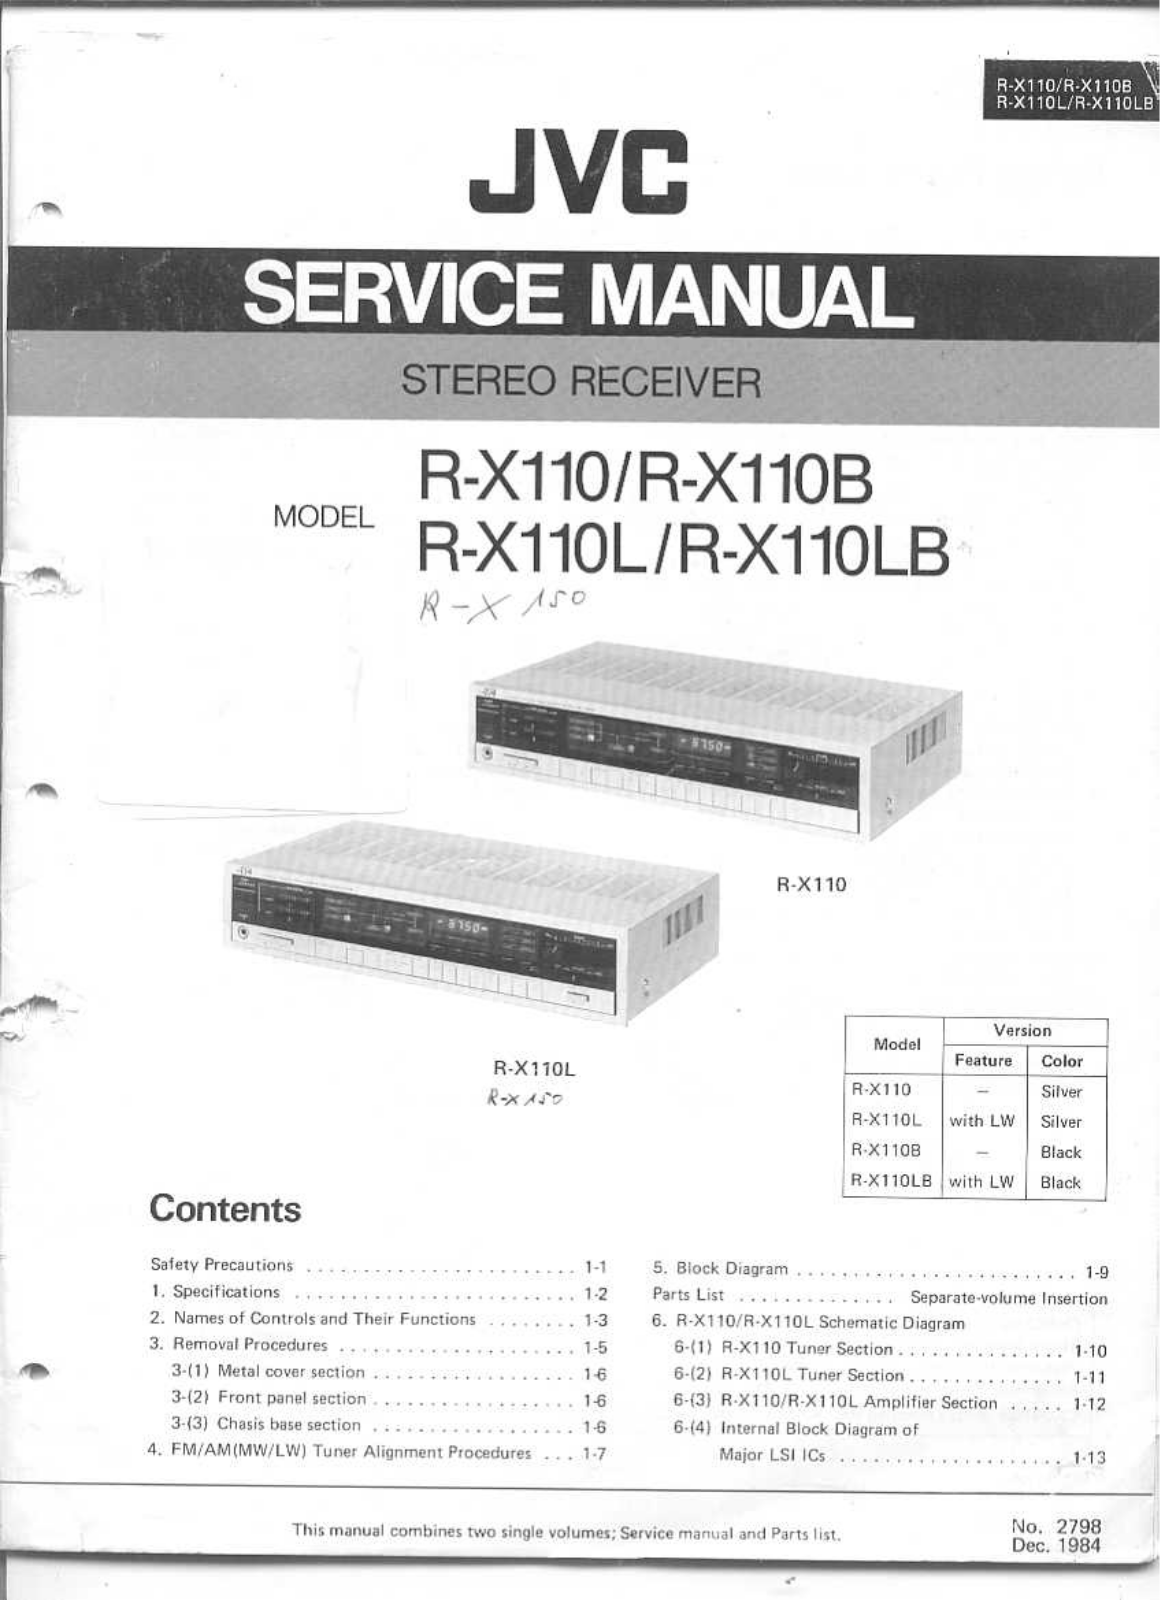 Jvc RX-110-B, RX-110, RX-110-LB, RX-110-L Service Manual